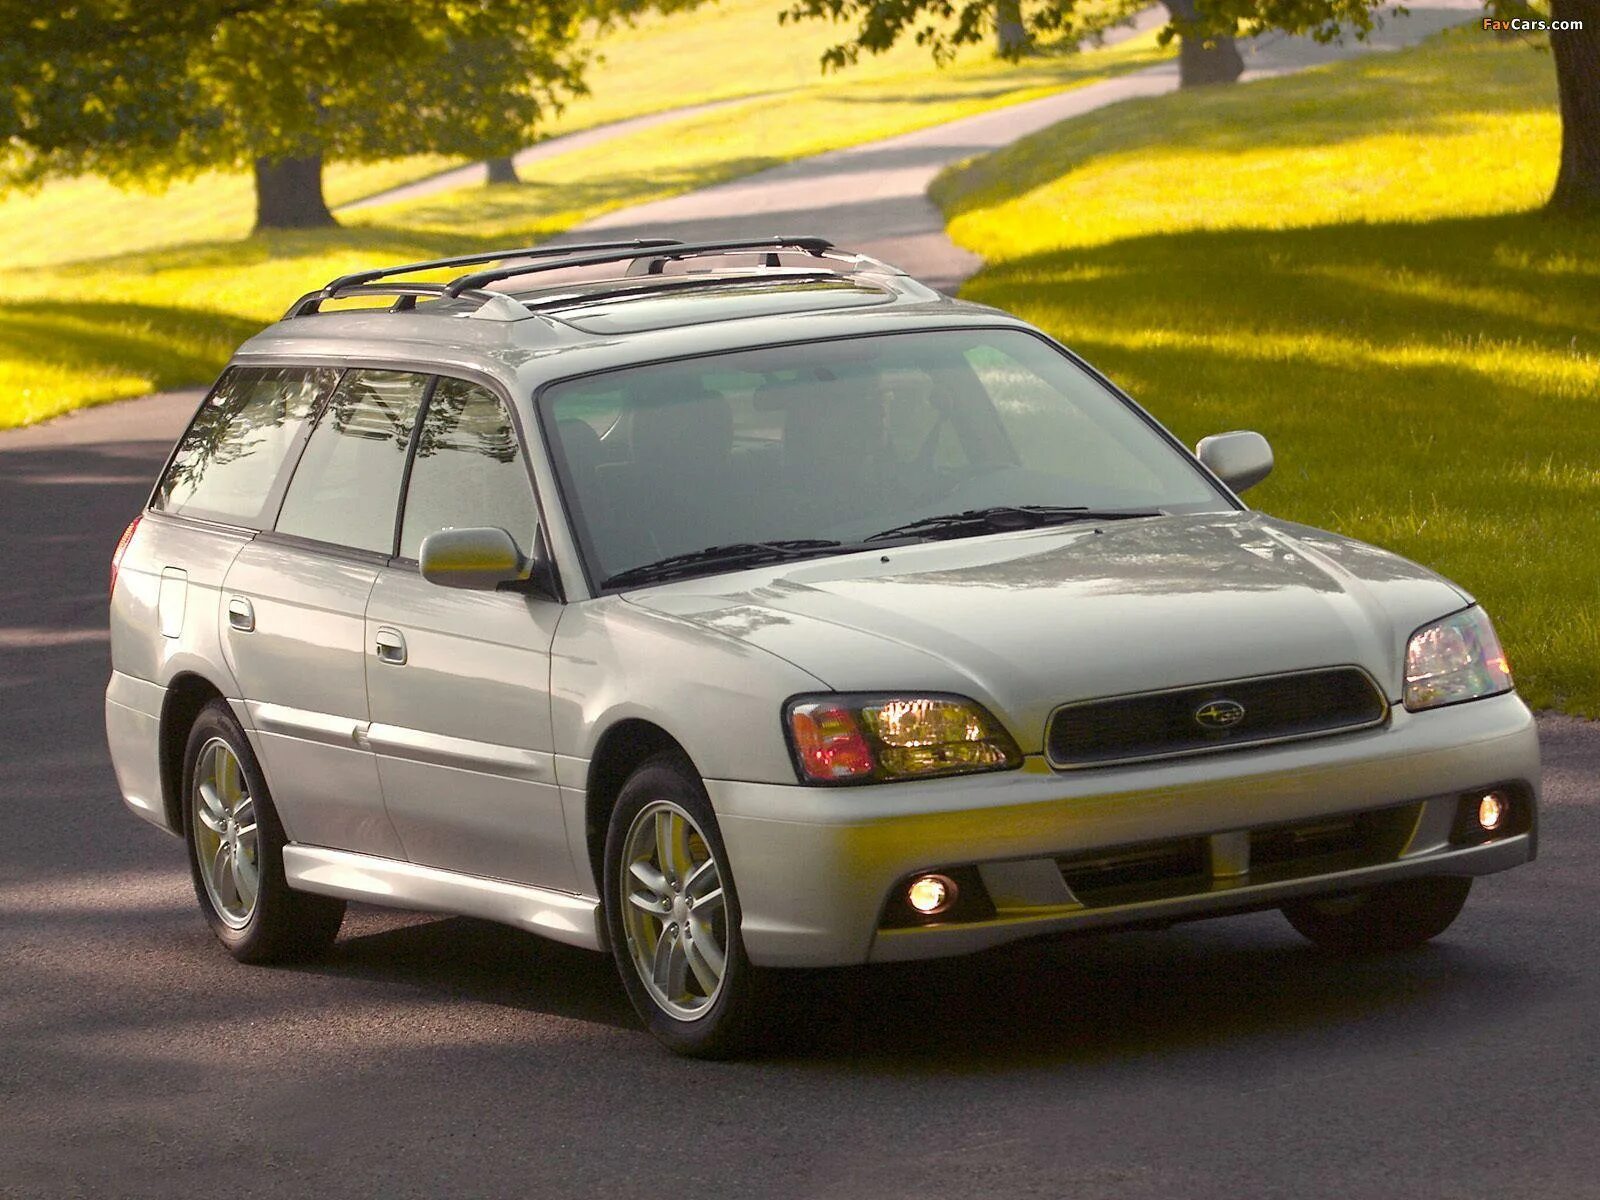 1998 Subaru Legacy Wagon. Subaru Legacy 2003. Subaru Legacy Outback 2003. Subaru Legacy 2.5 1998.